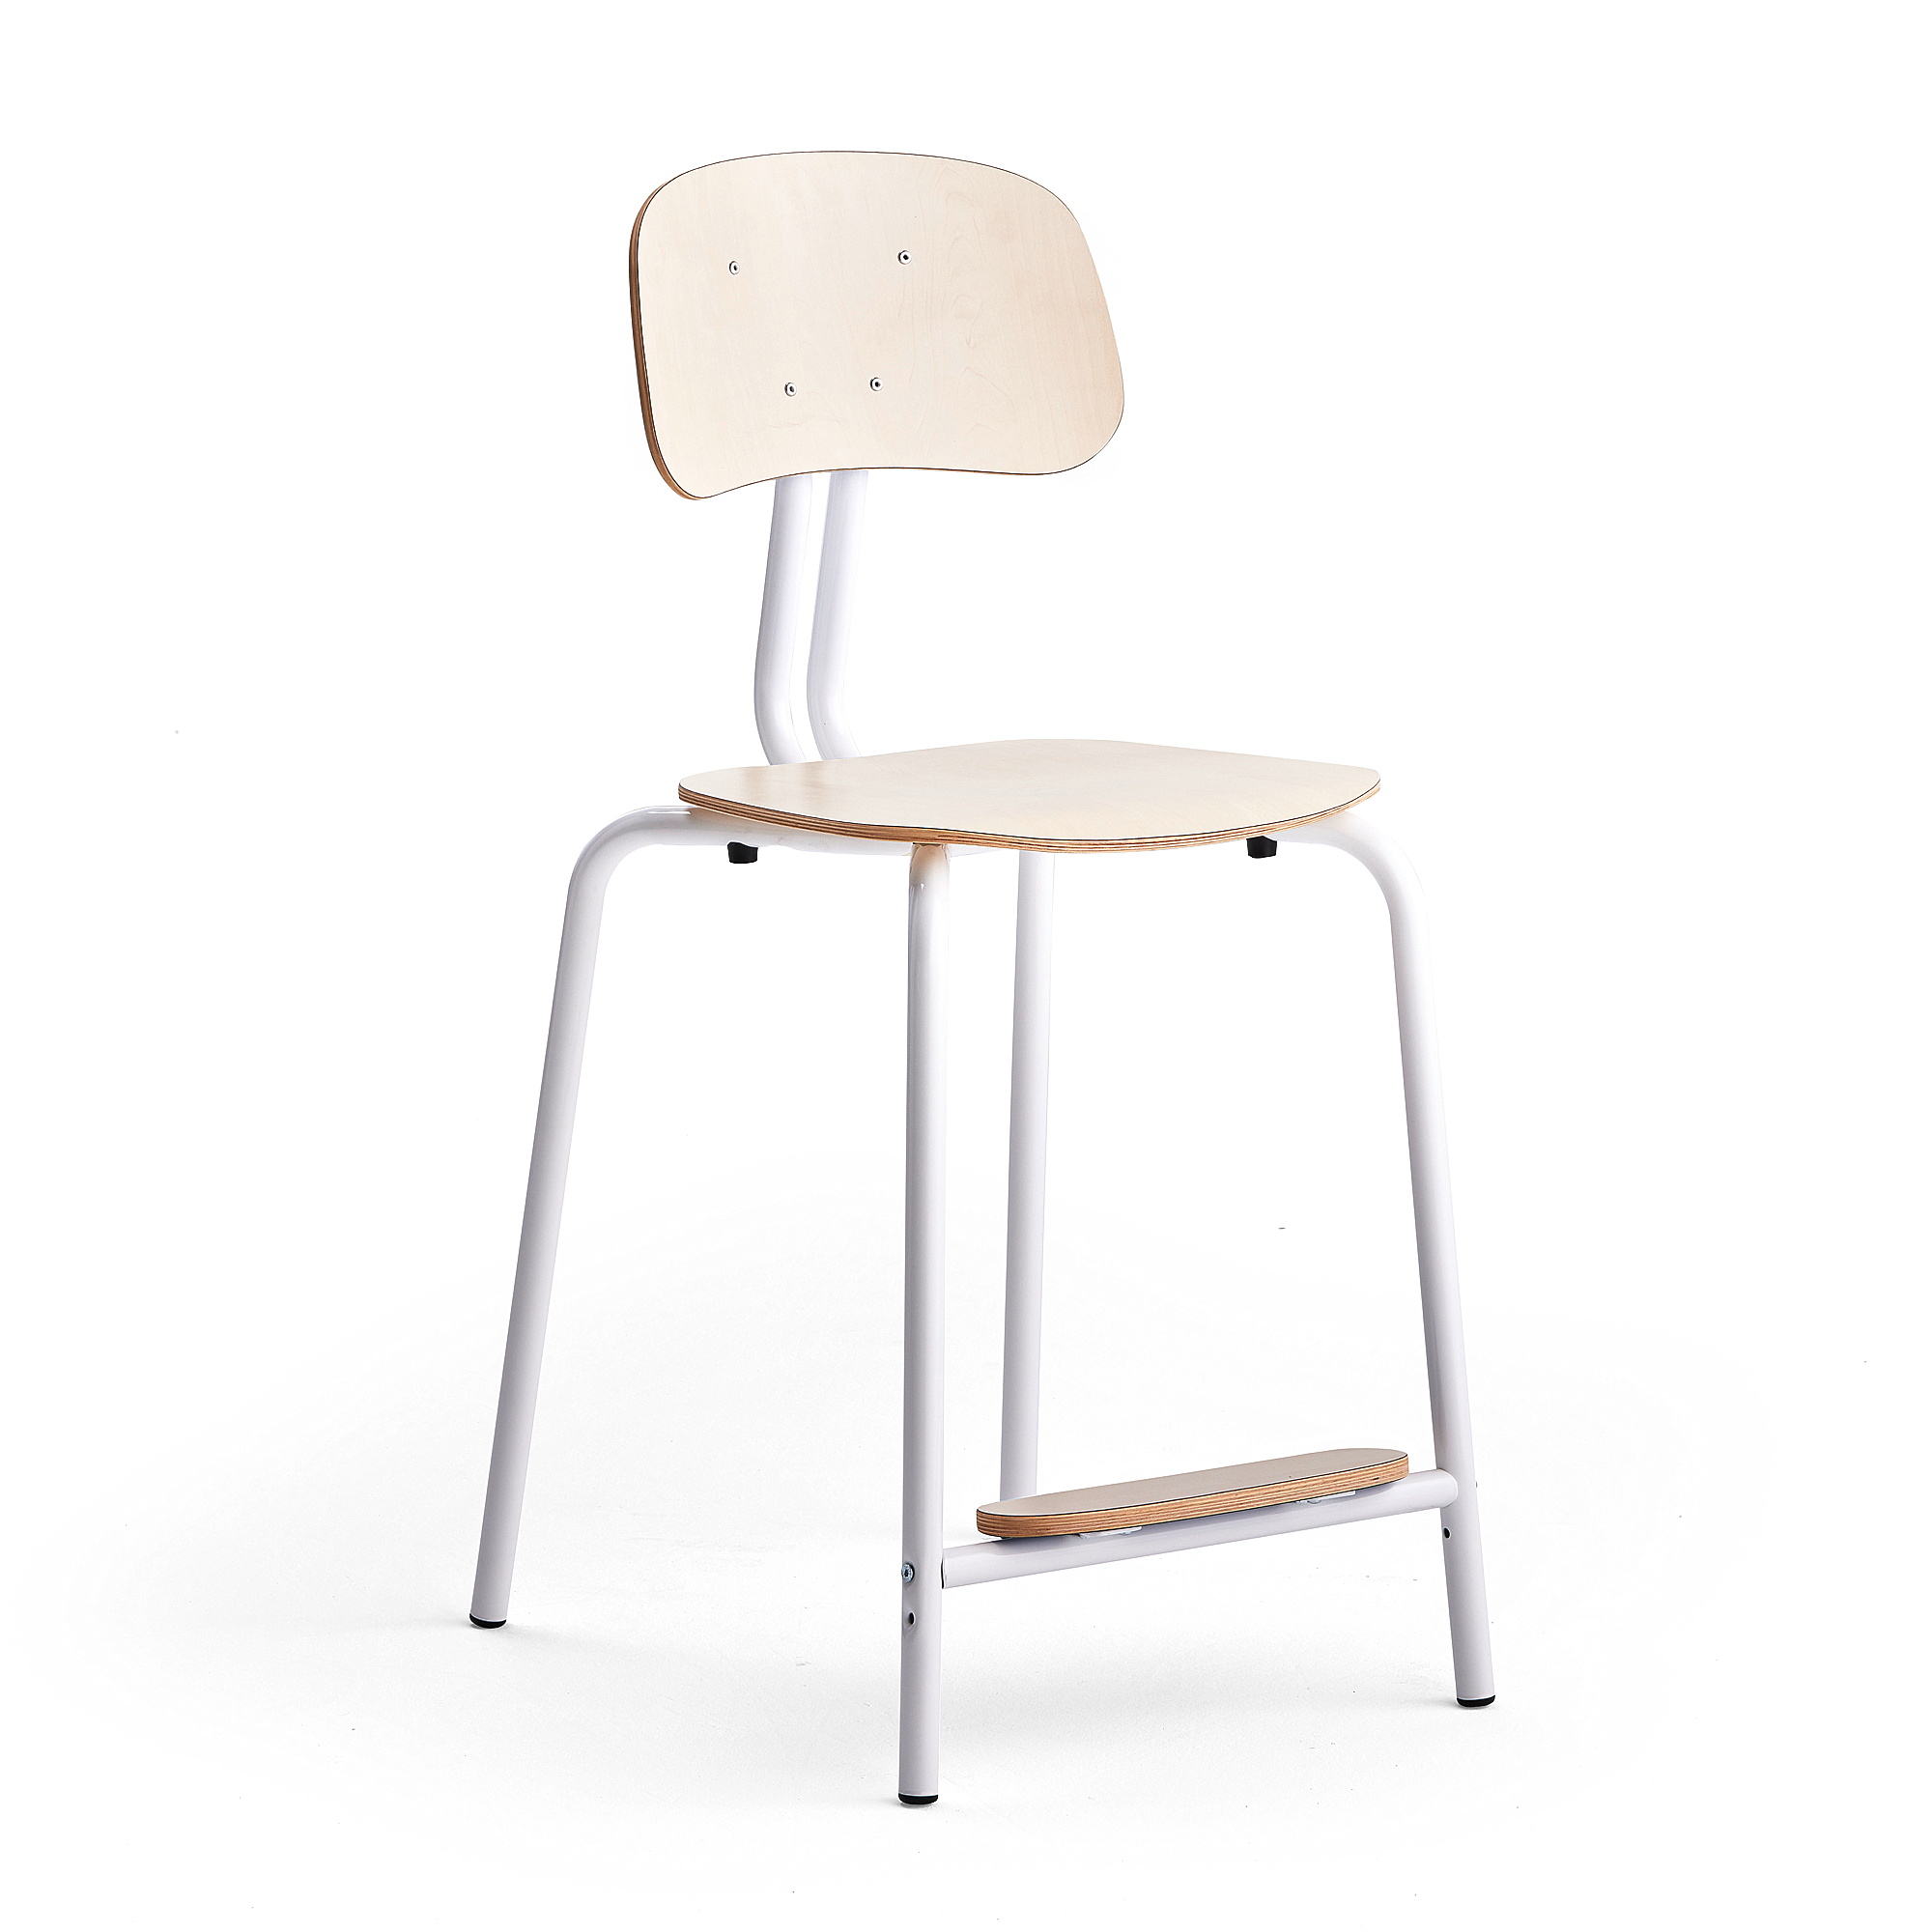 Školní židle YNGVE, 4 nohy, výška 610 mm, bílá/bříza